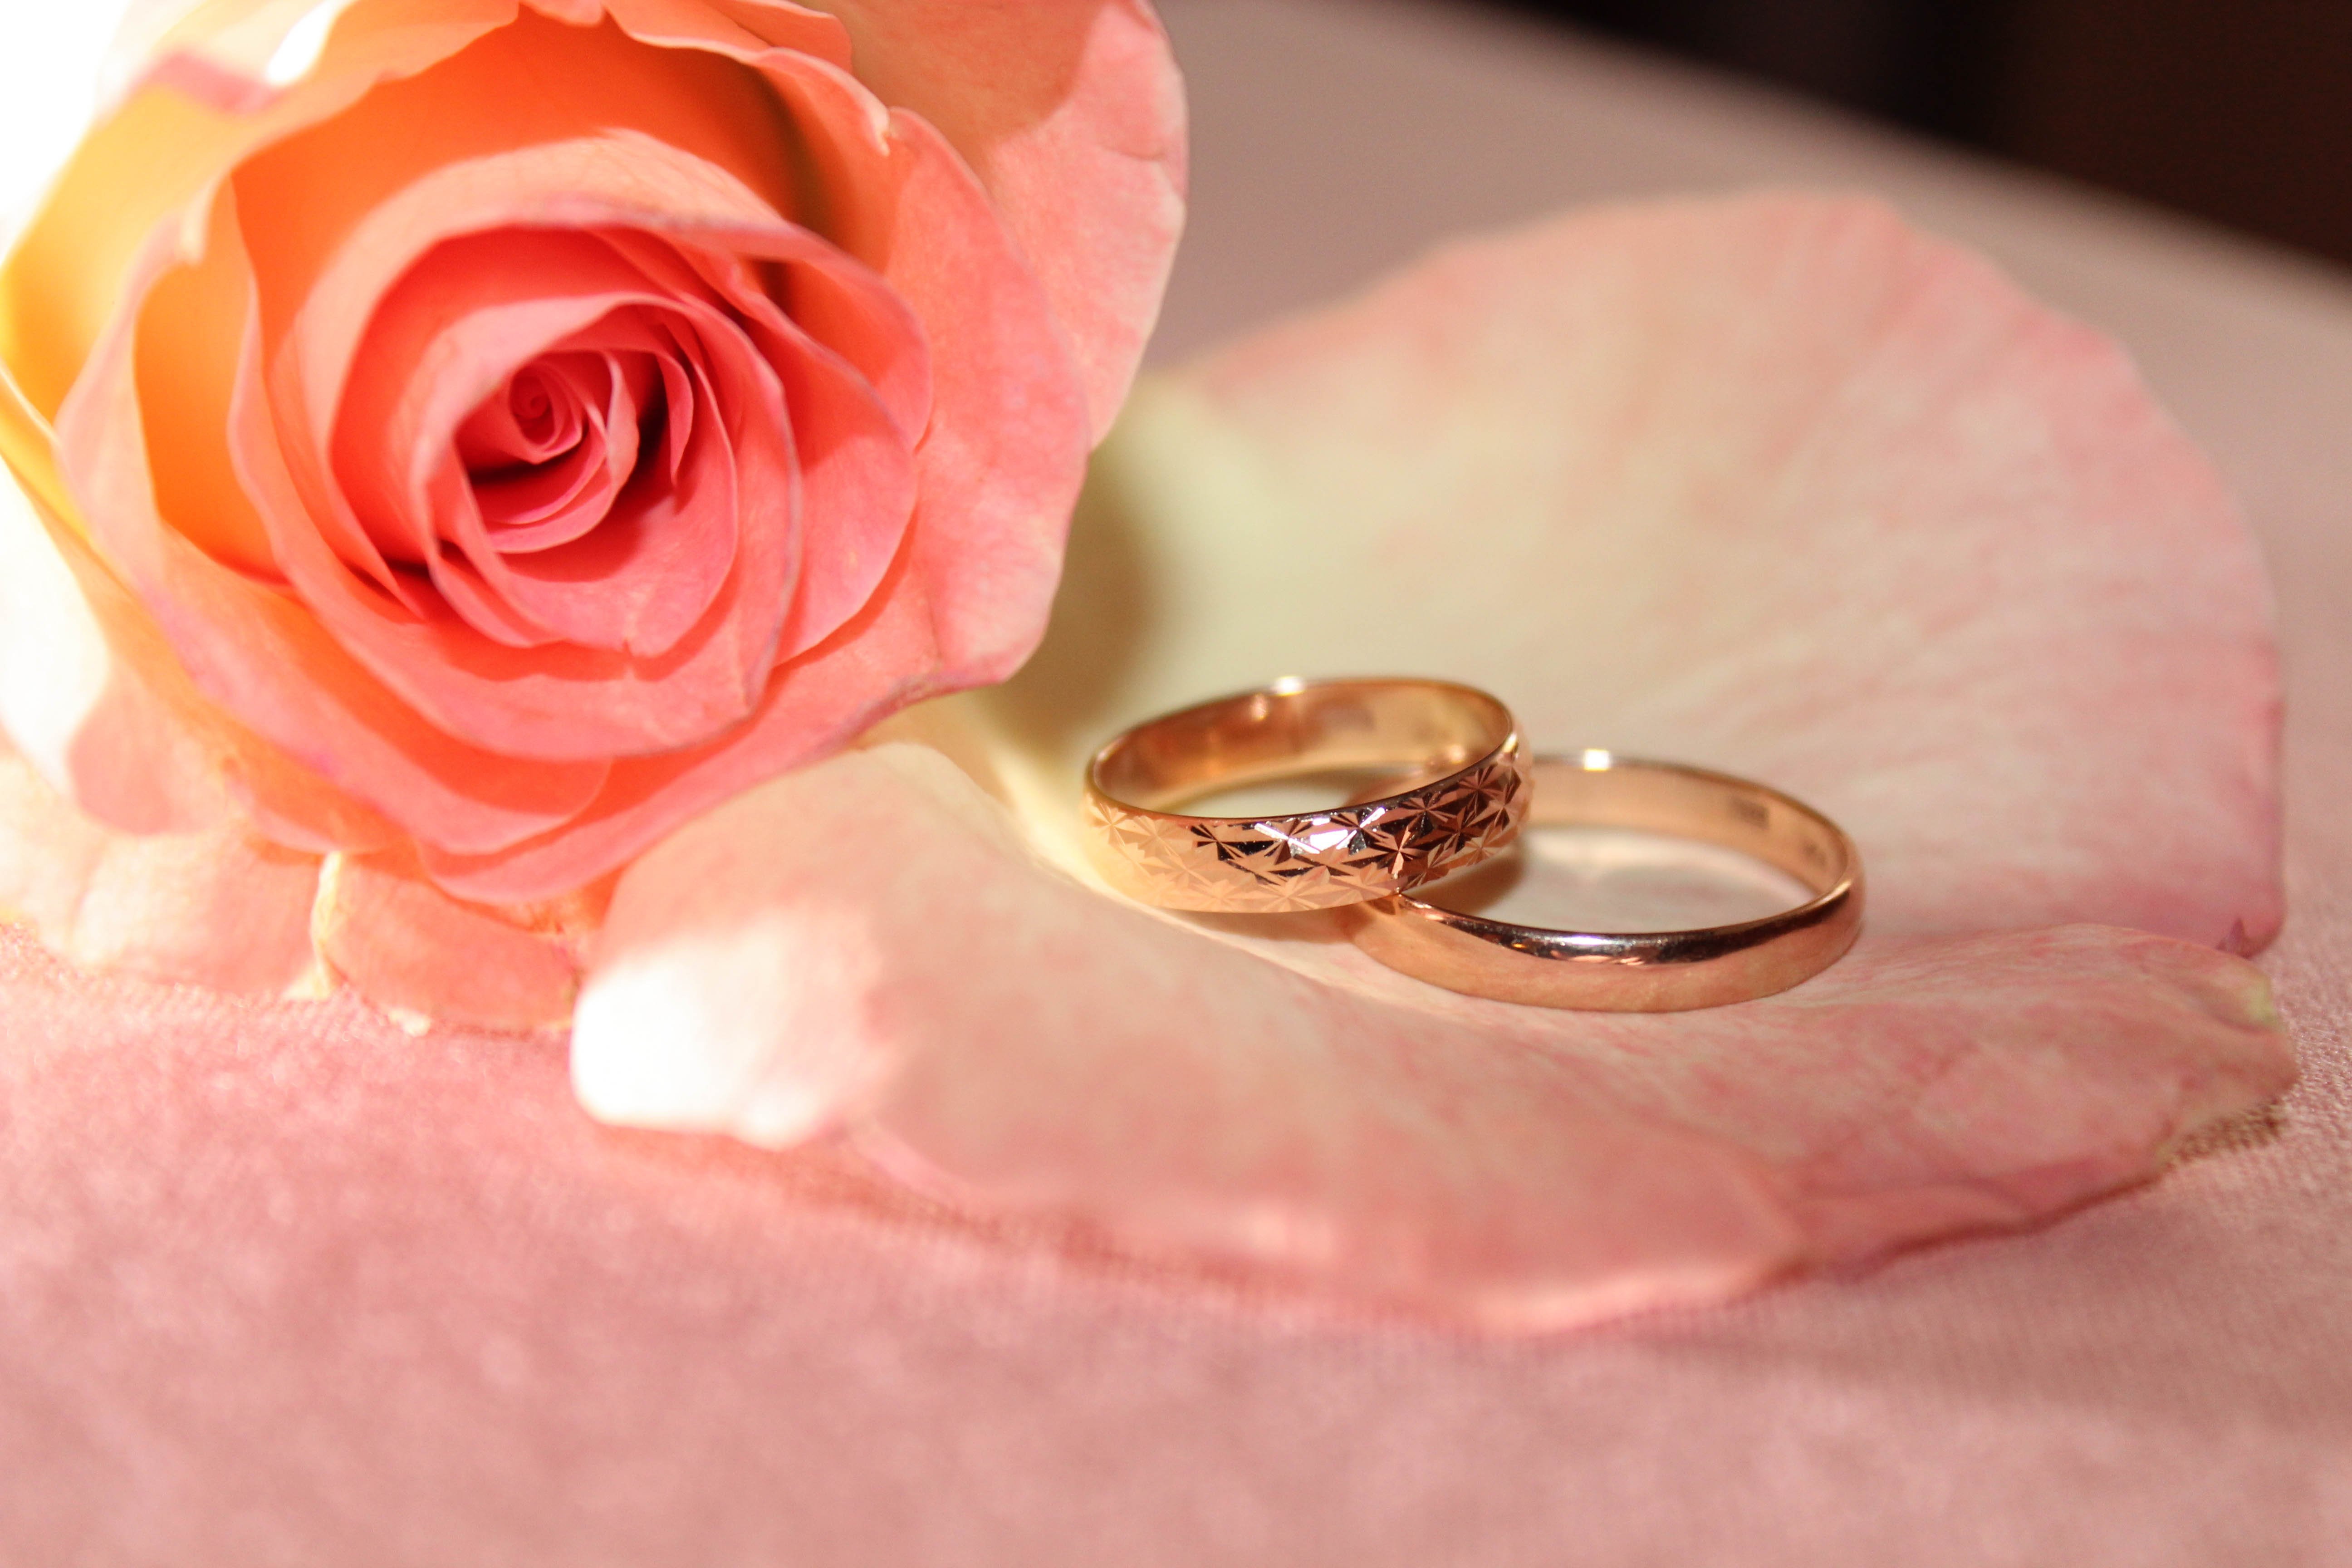 Фото кольца и цветов. Свадебные кольца. Обручальные кольца и цветы. Розовые розы с обручальными кольцами. Свадебные кольца нежные.